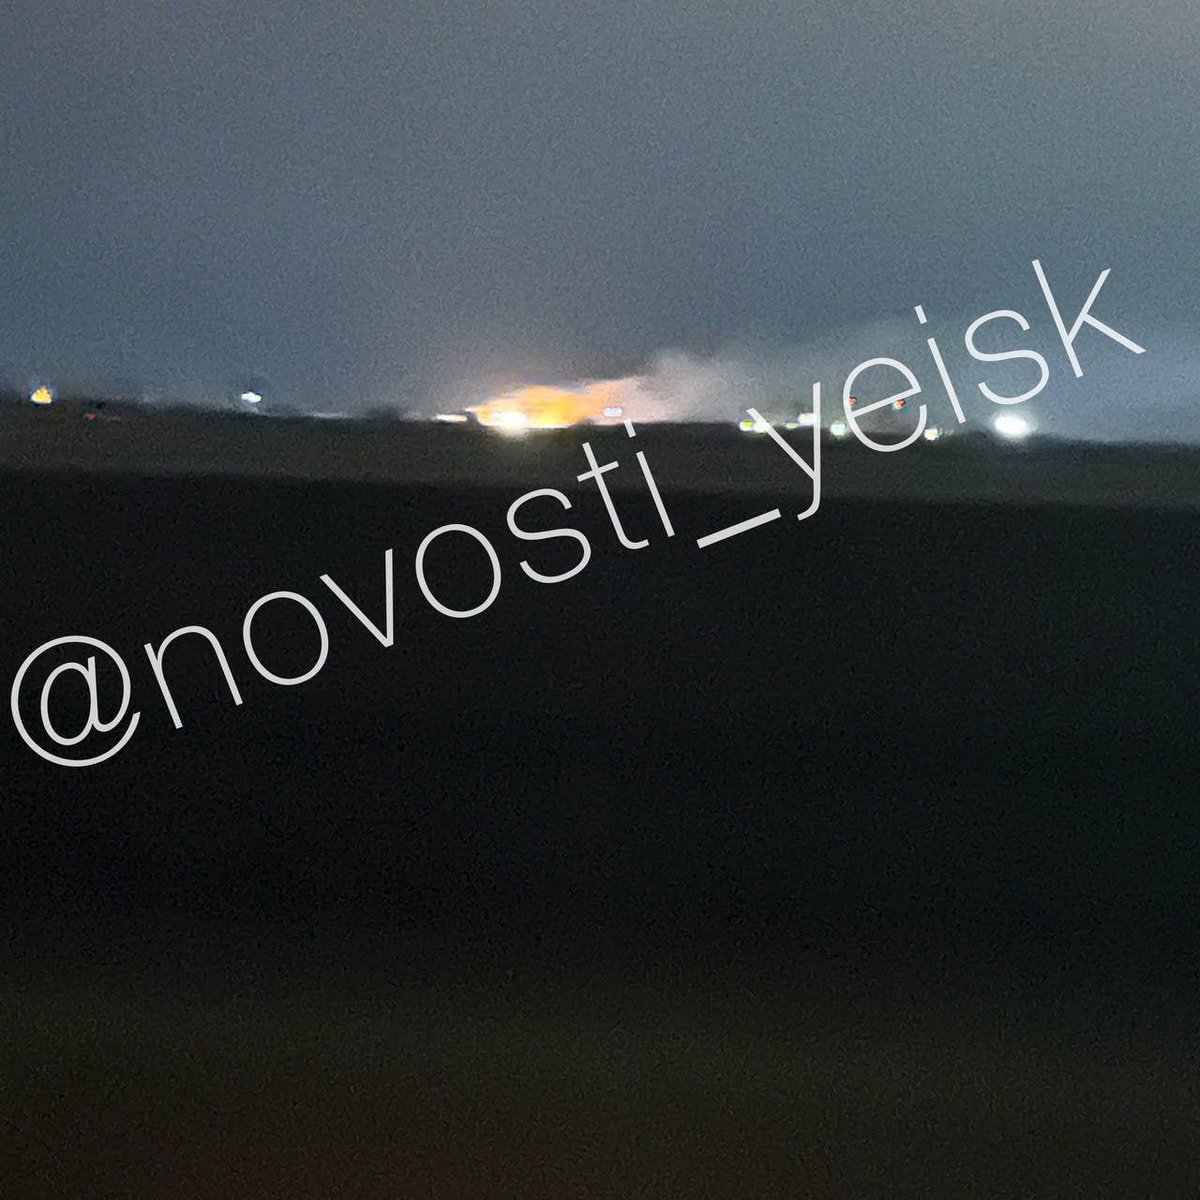 Съобщава се за пожар и експлозии близо до авиобазата в Йейск, Краснодарски край